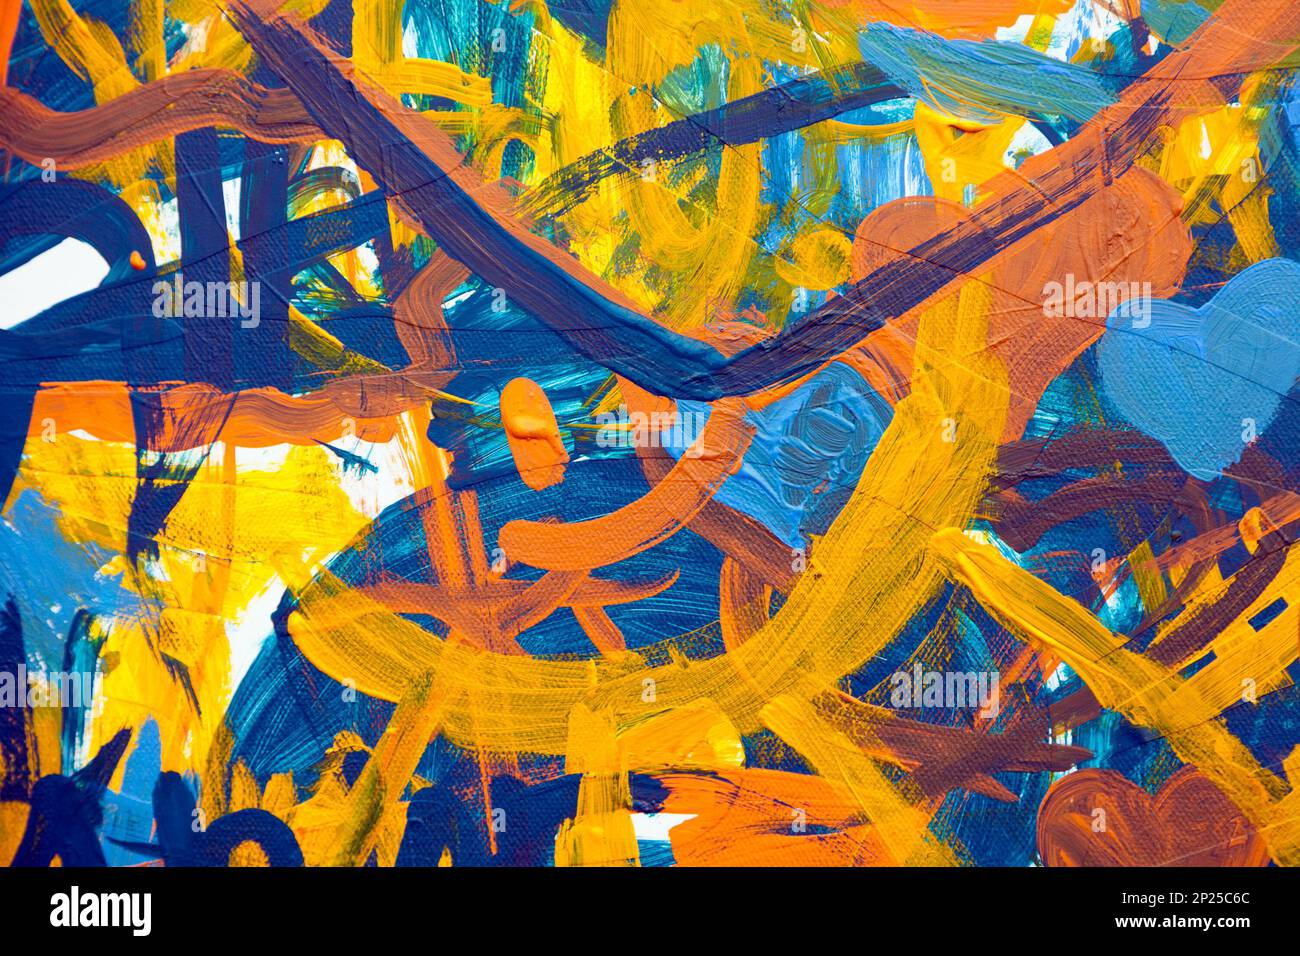 Farbenfrohe abstrakte Ölgemälde von Kindern gemacht. Gelb, orange und blau chaotischen Pinselstriche auf eine kindliche Zeichnung. Unordentliche infantile Scribble close-u Stockfoto